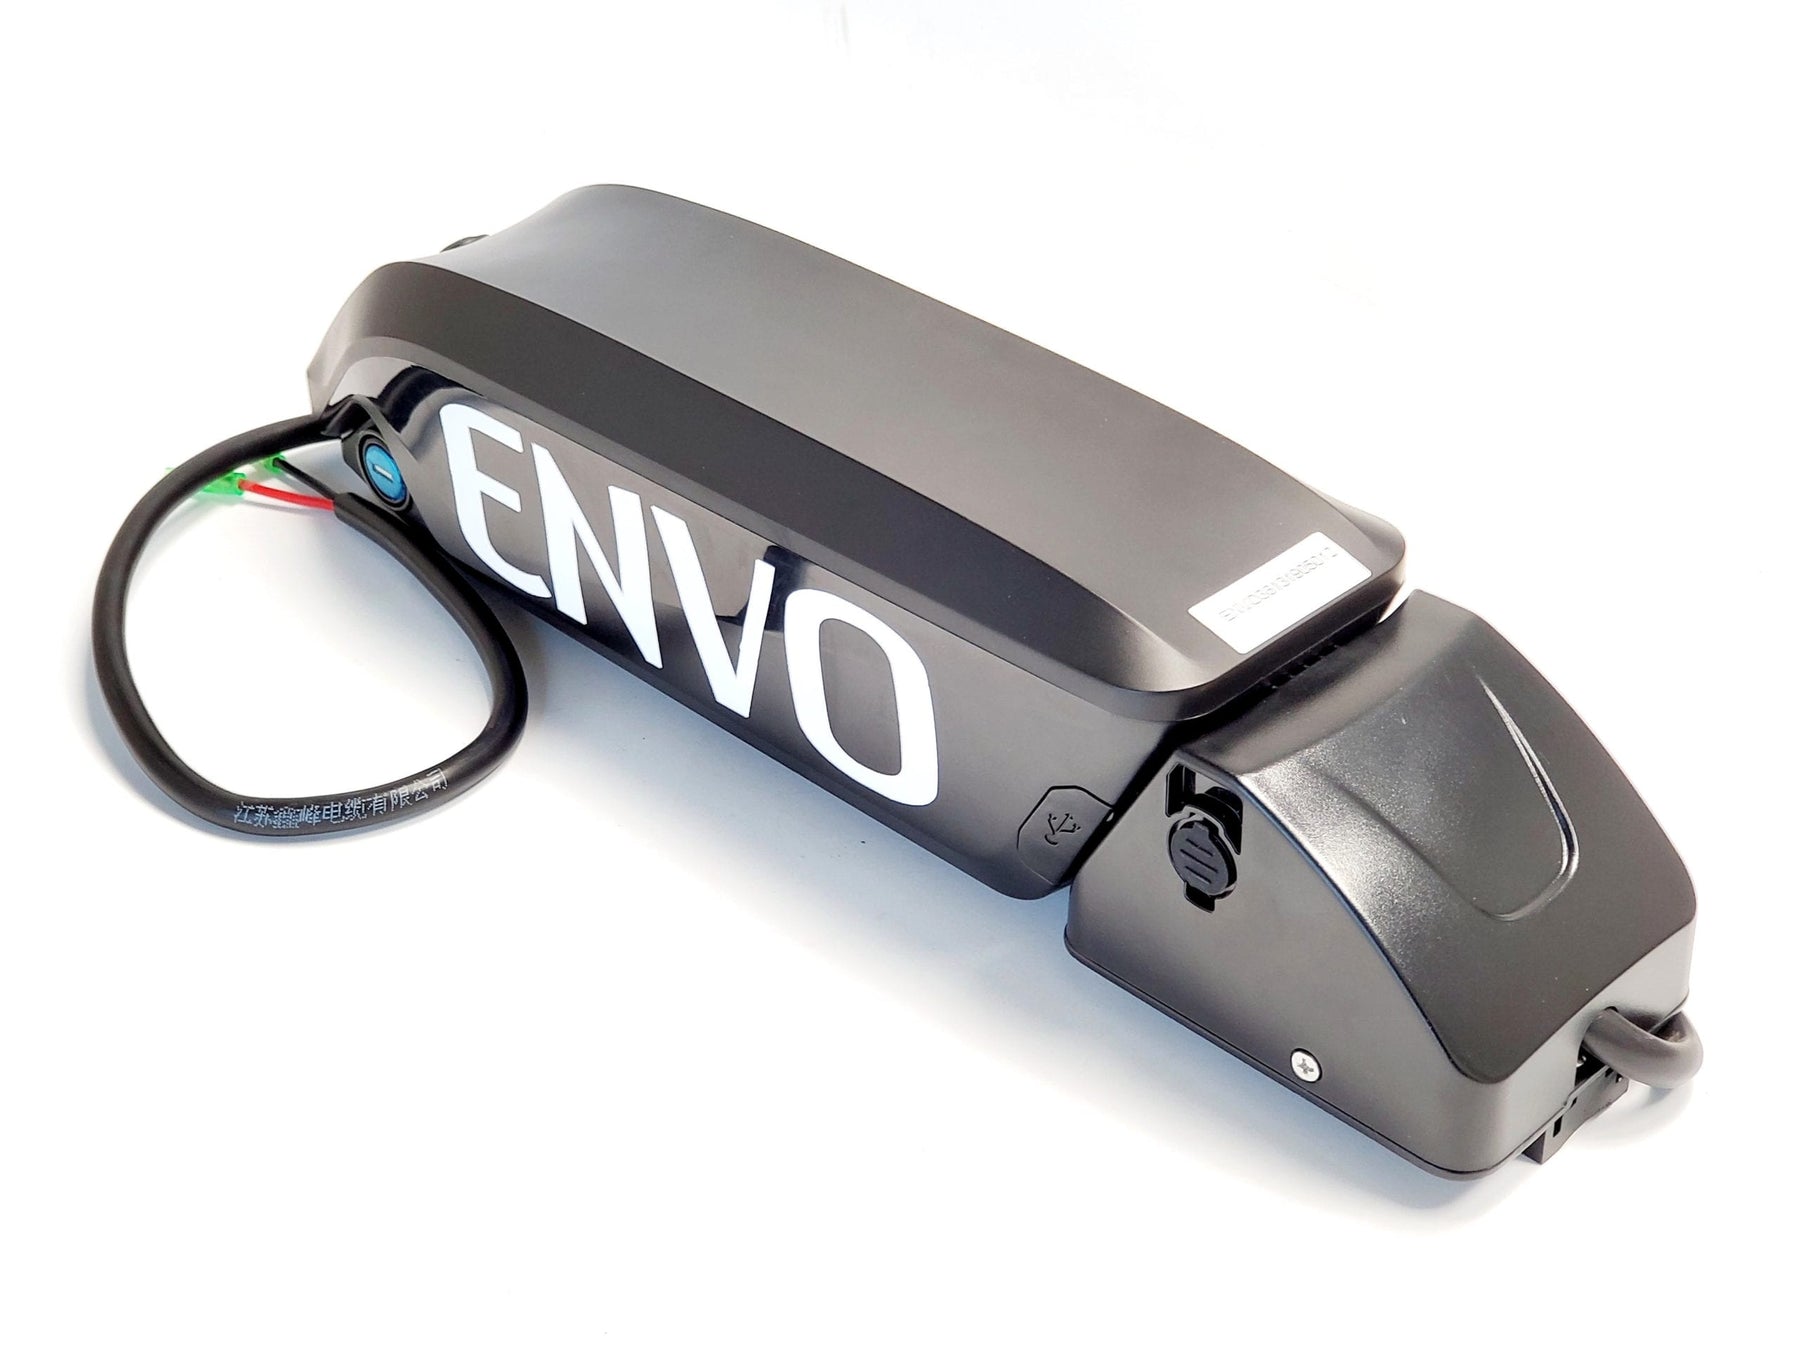 ENVO Battery 36V 12.8Ah for Electric Bike